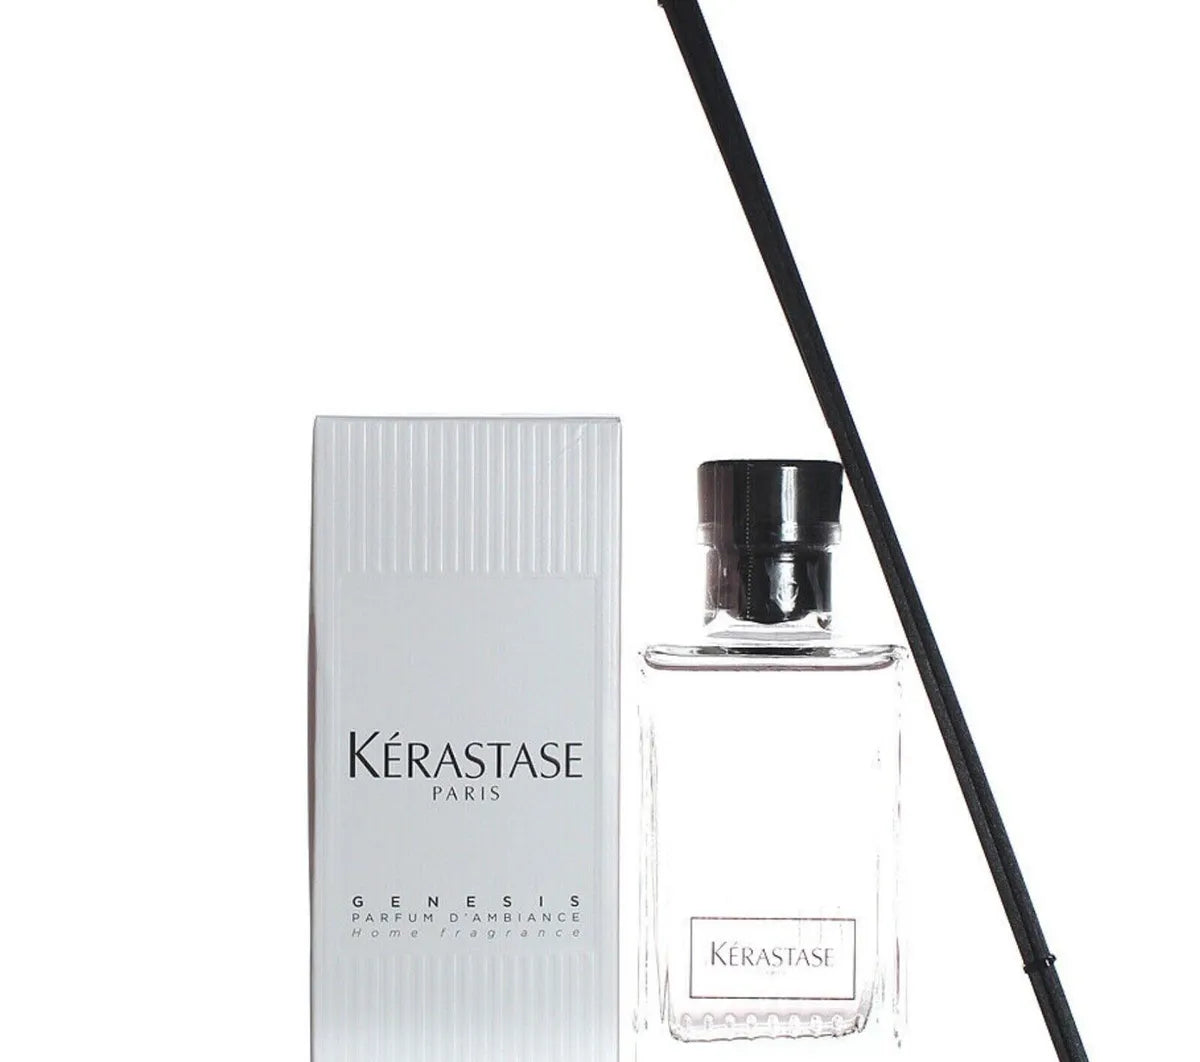 Kerastase Paris Genesis Home Fragrance 195ml